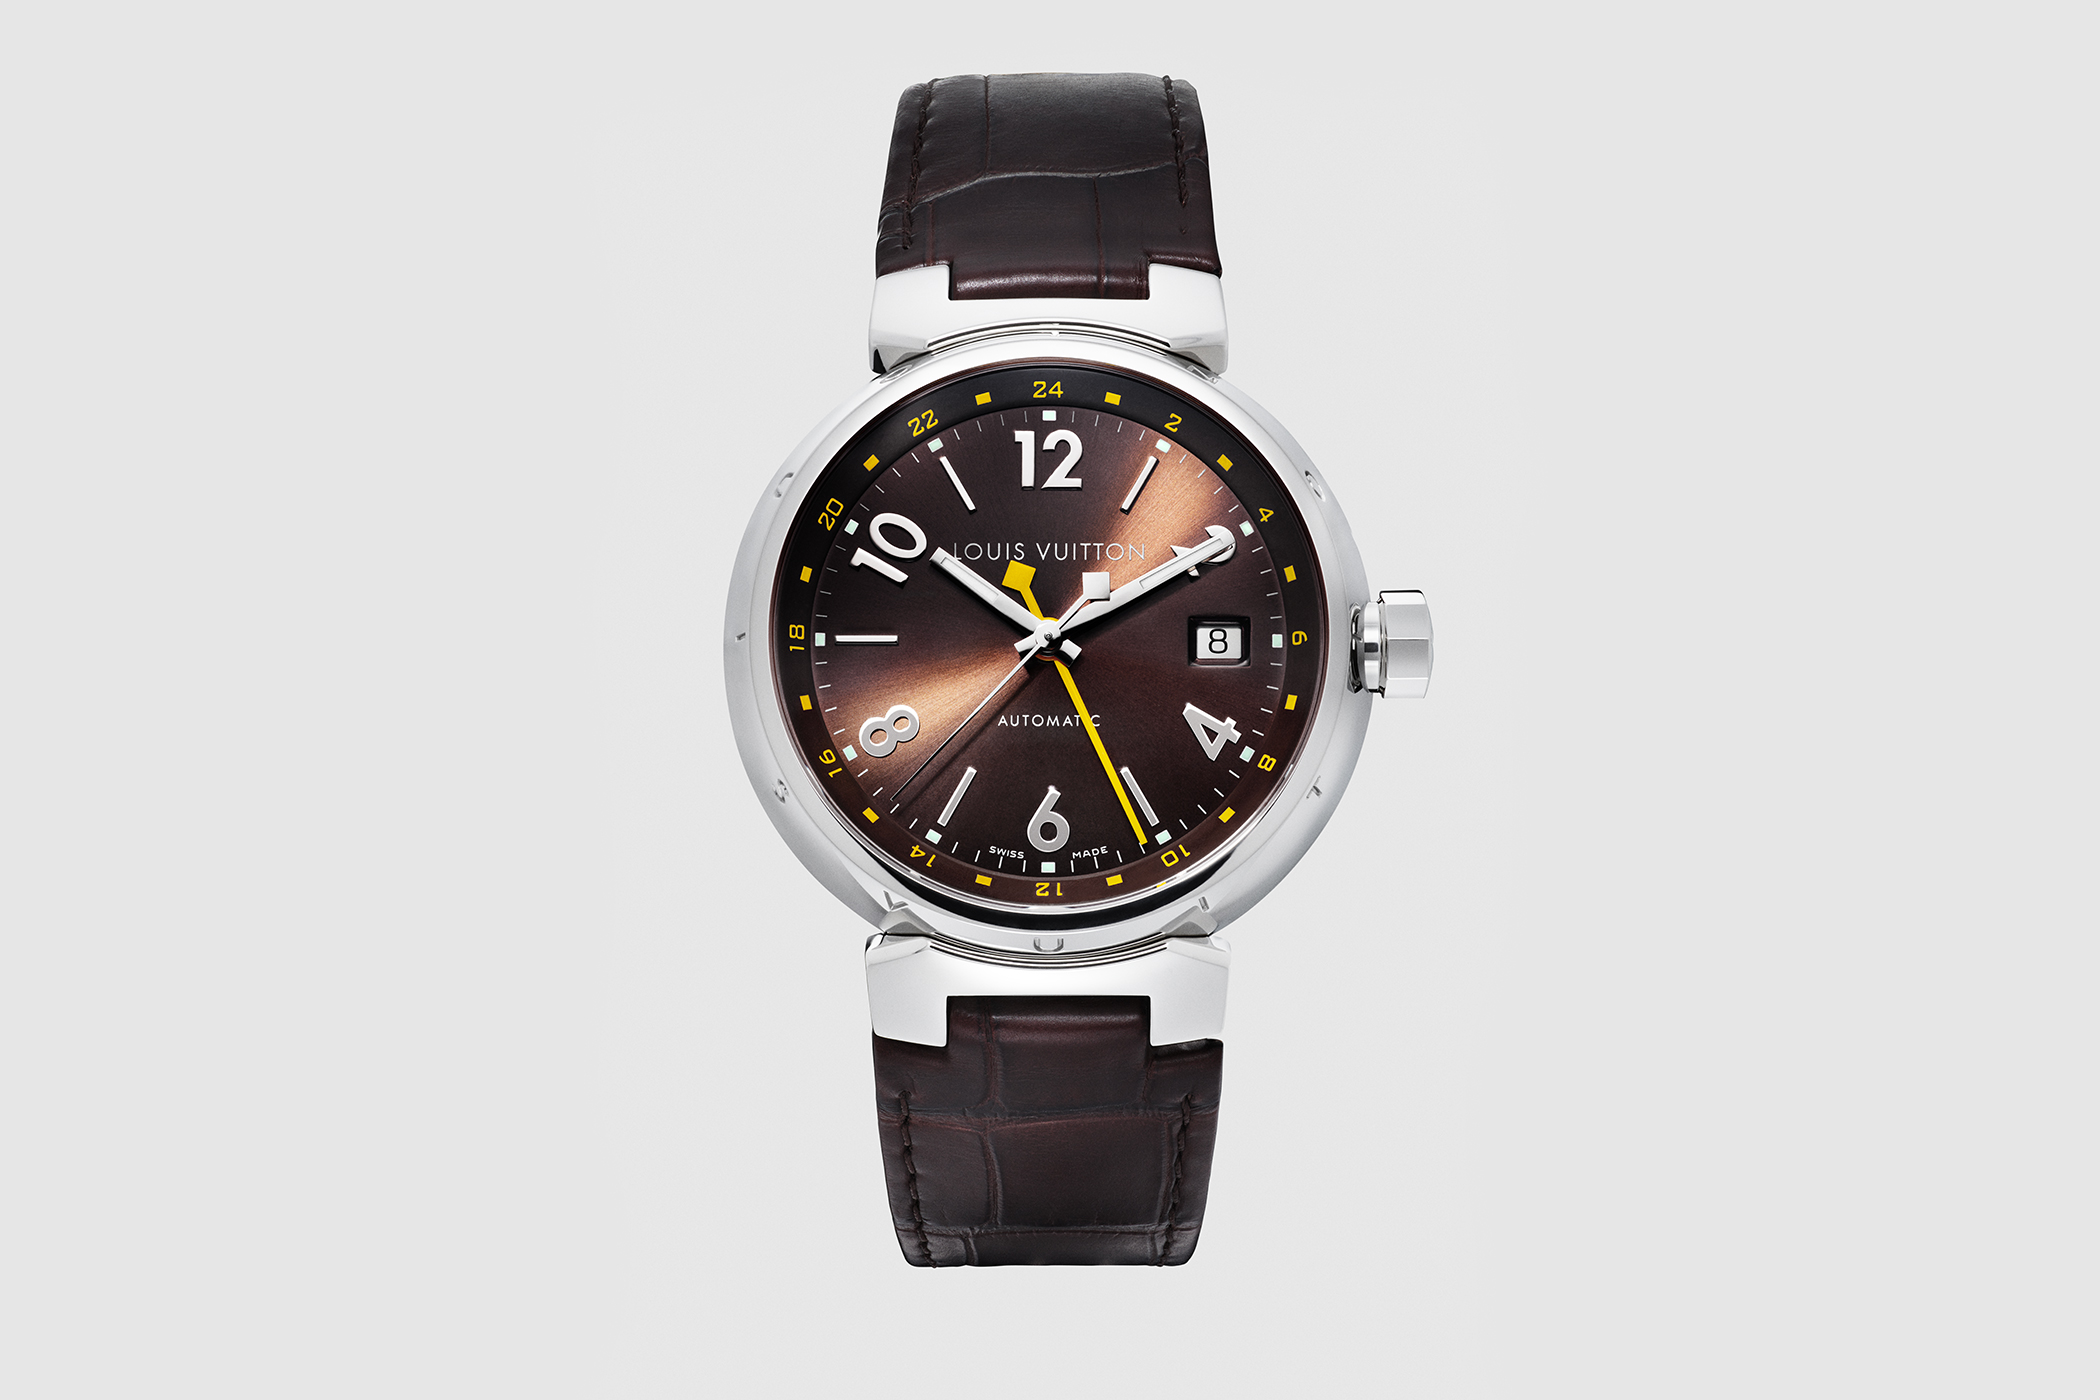 Louis Vuitton Tambour Evolution GMT Watch - Steel